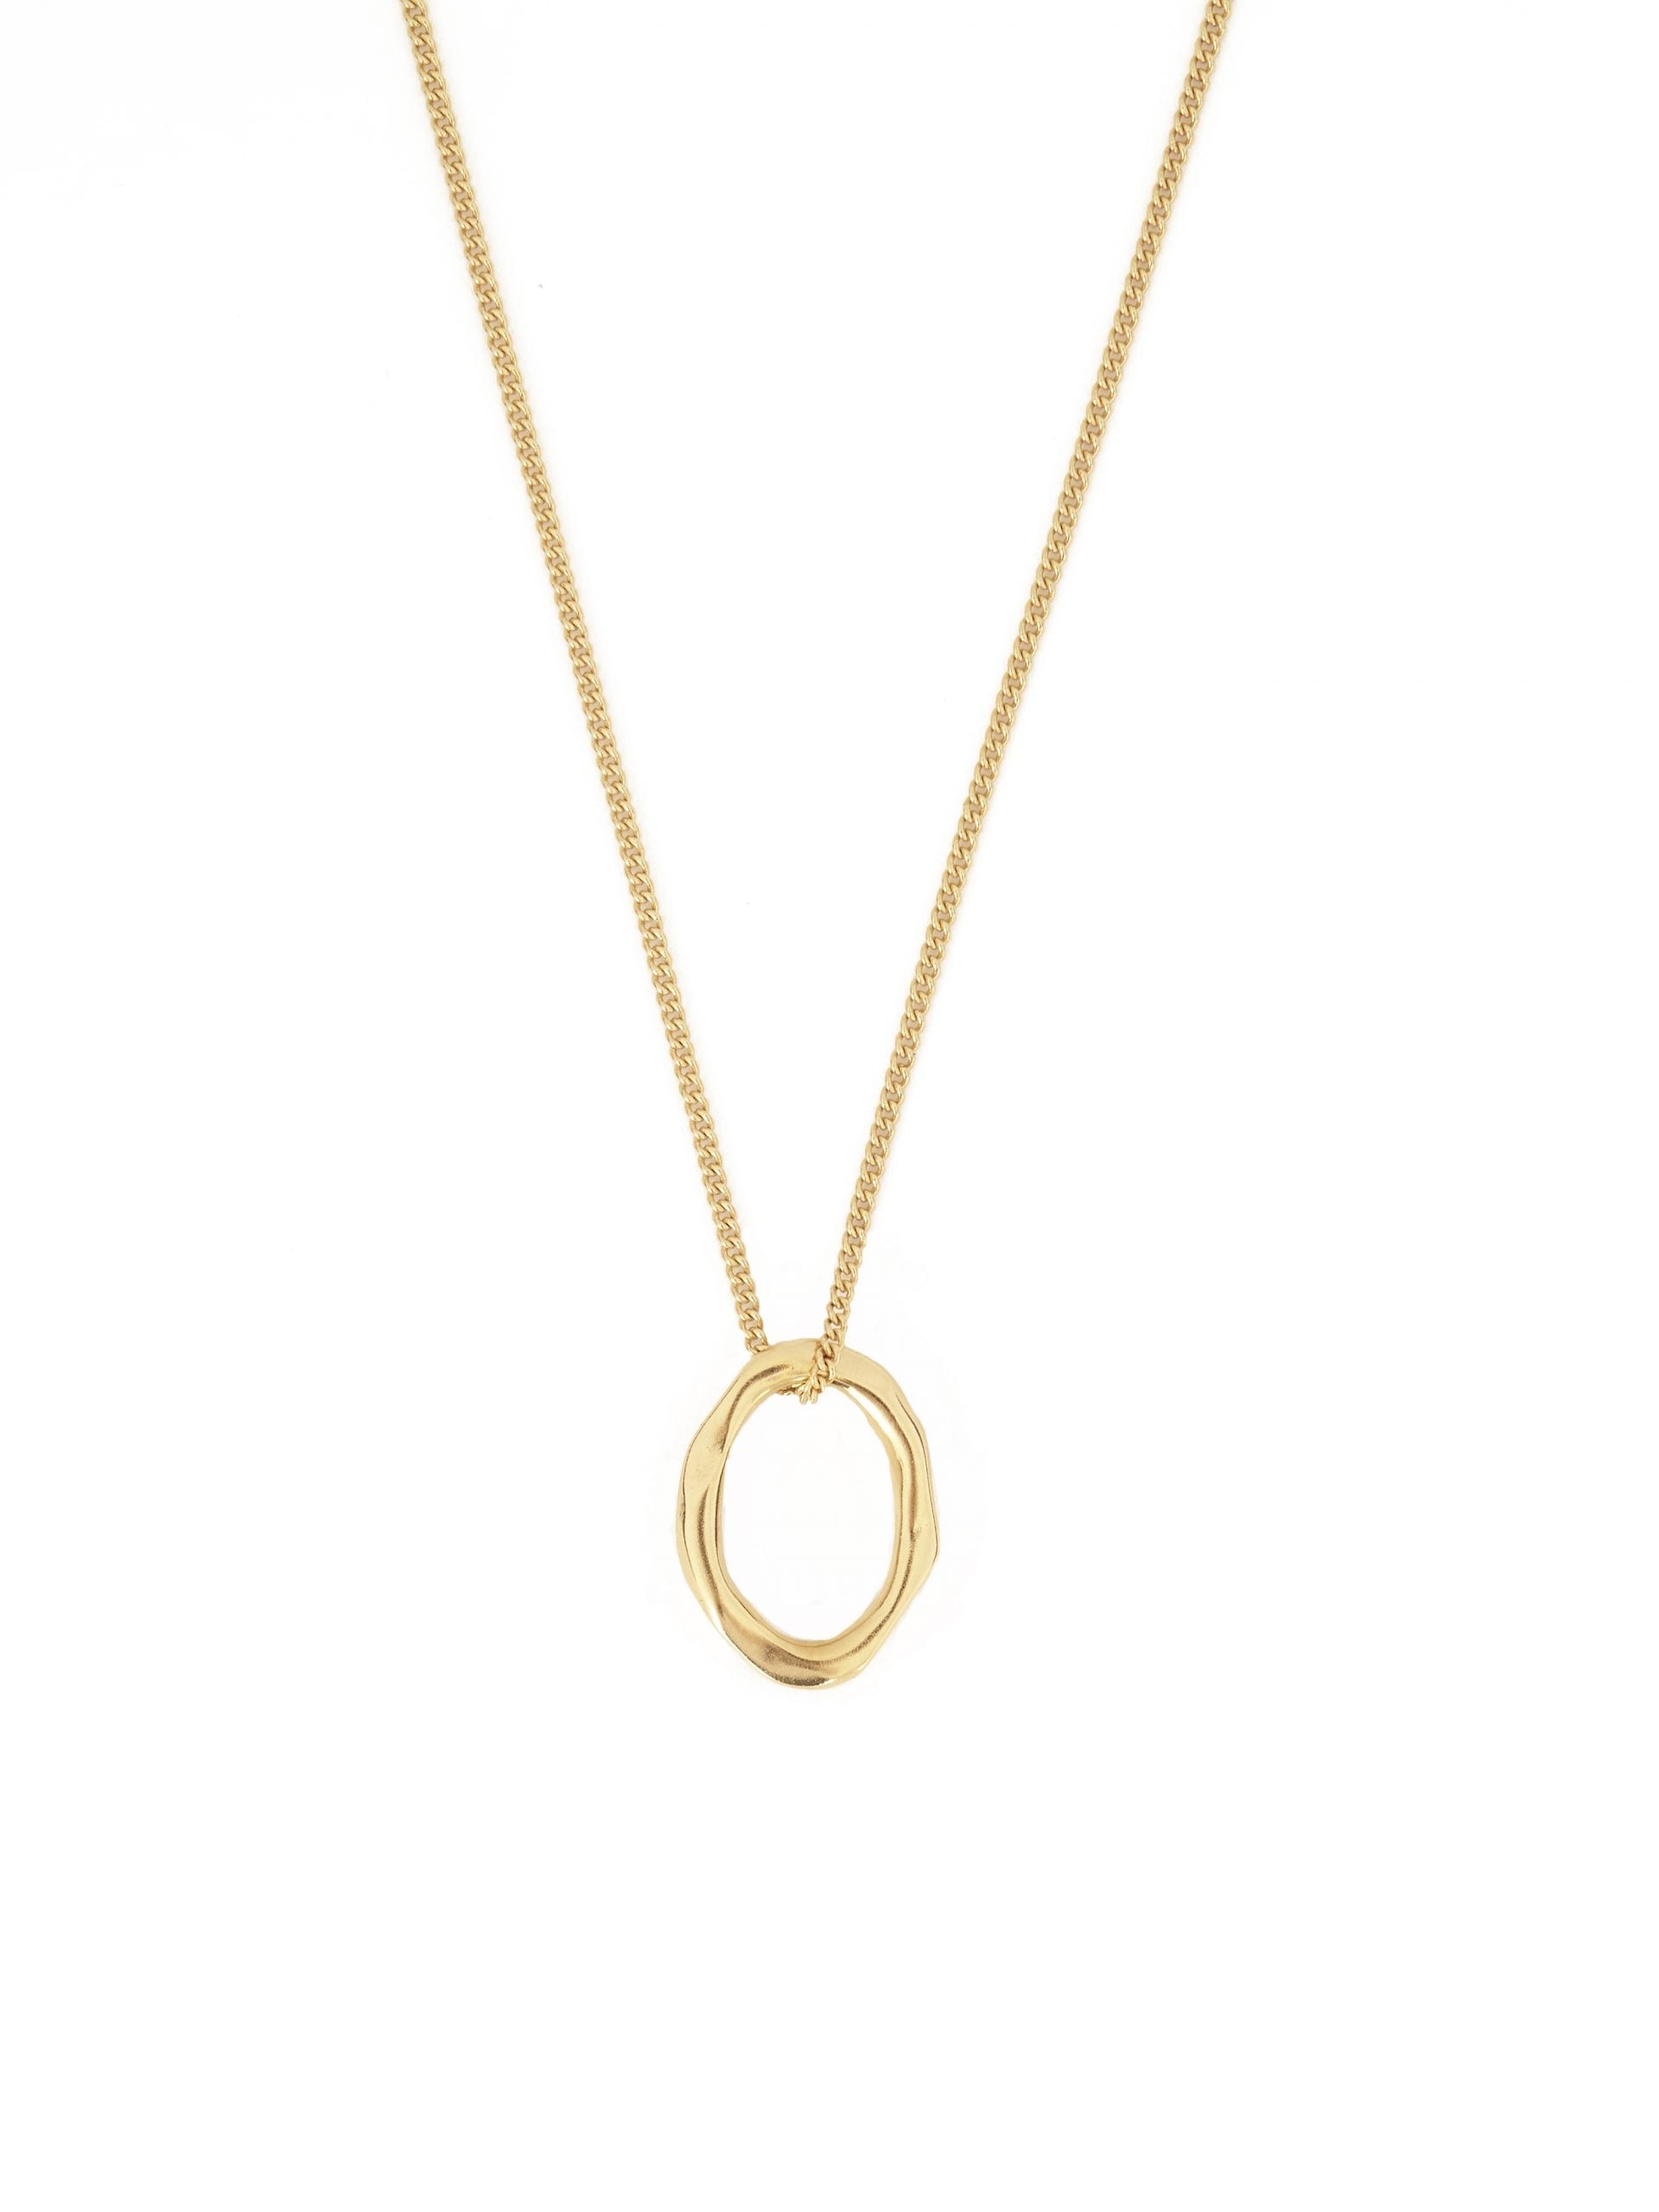 Odette Necklace Gold